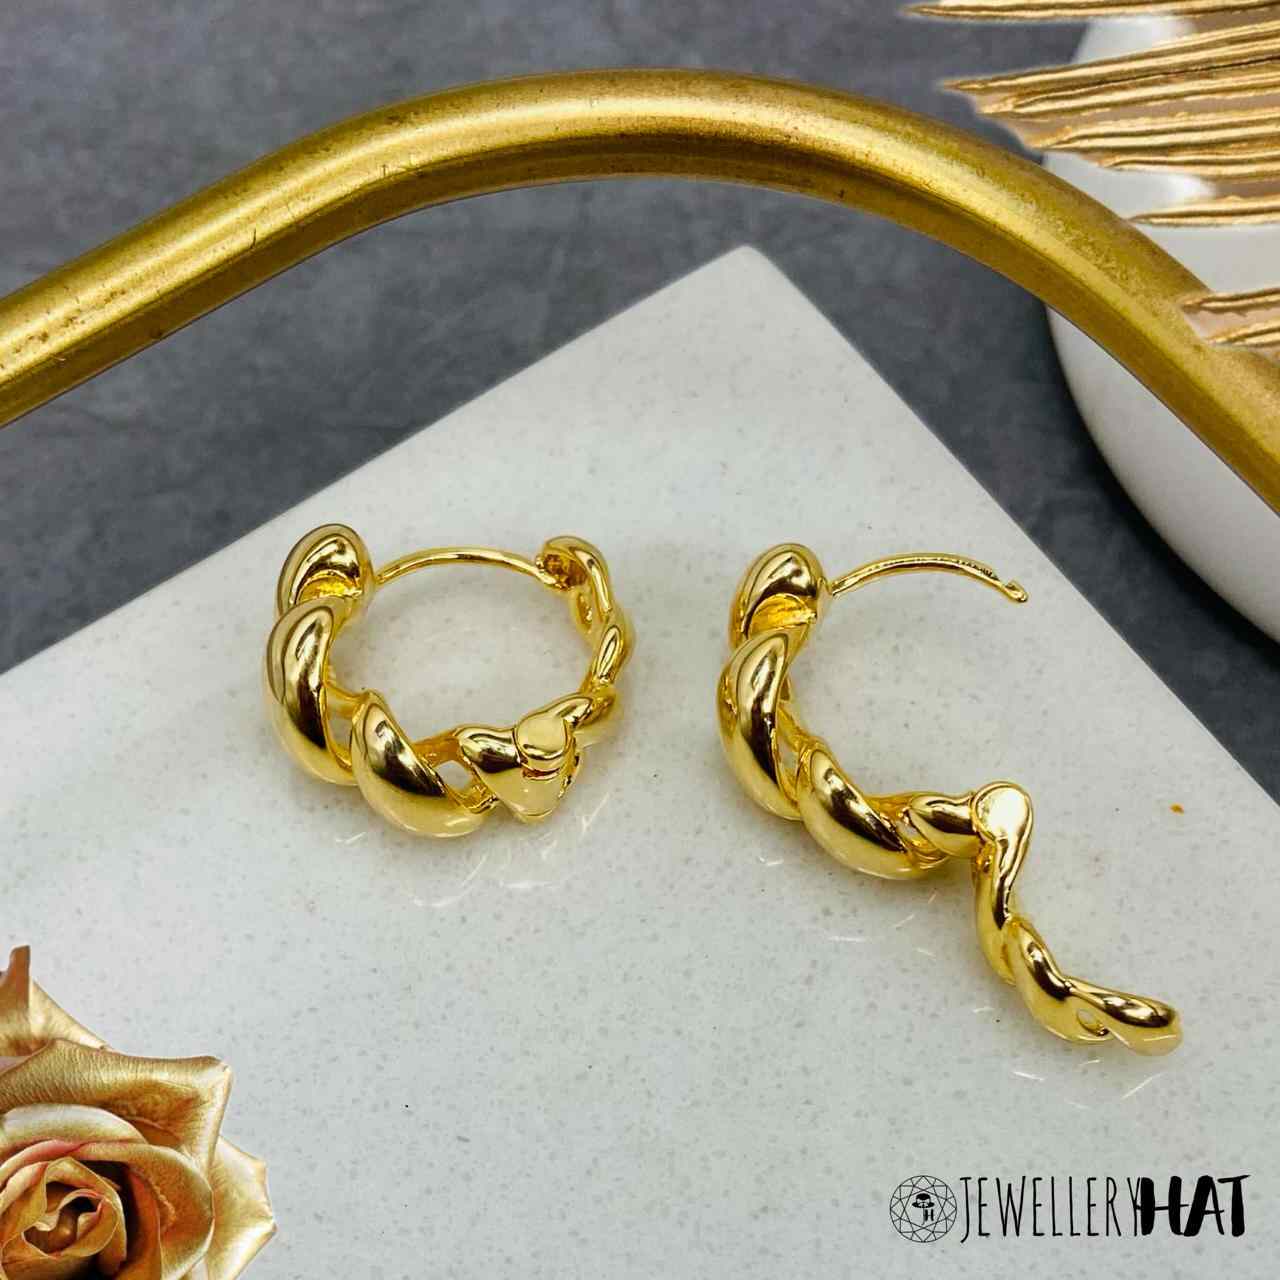 Bali Type Earrings